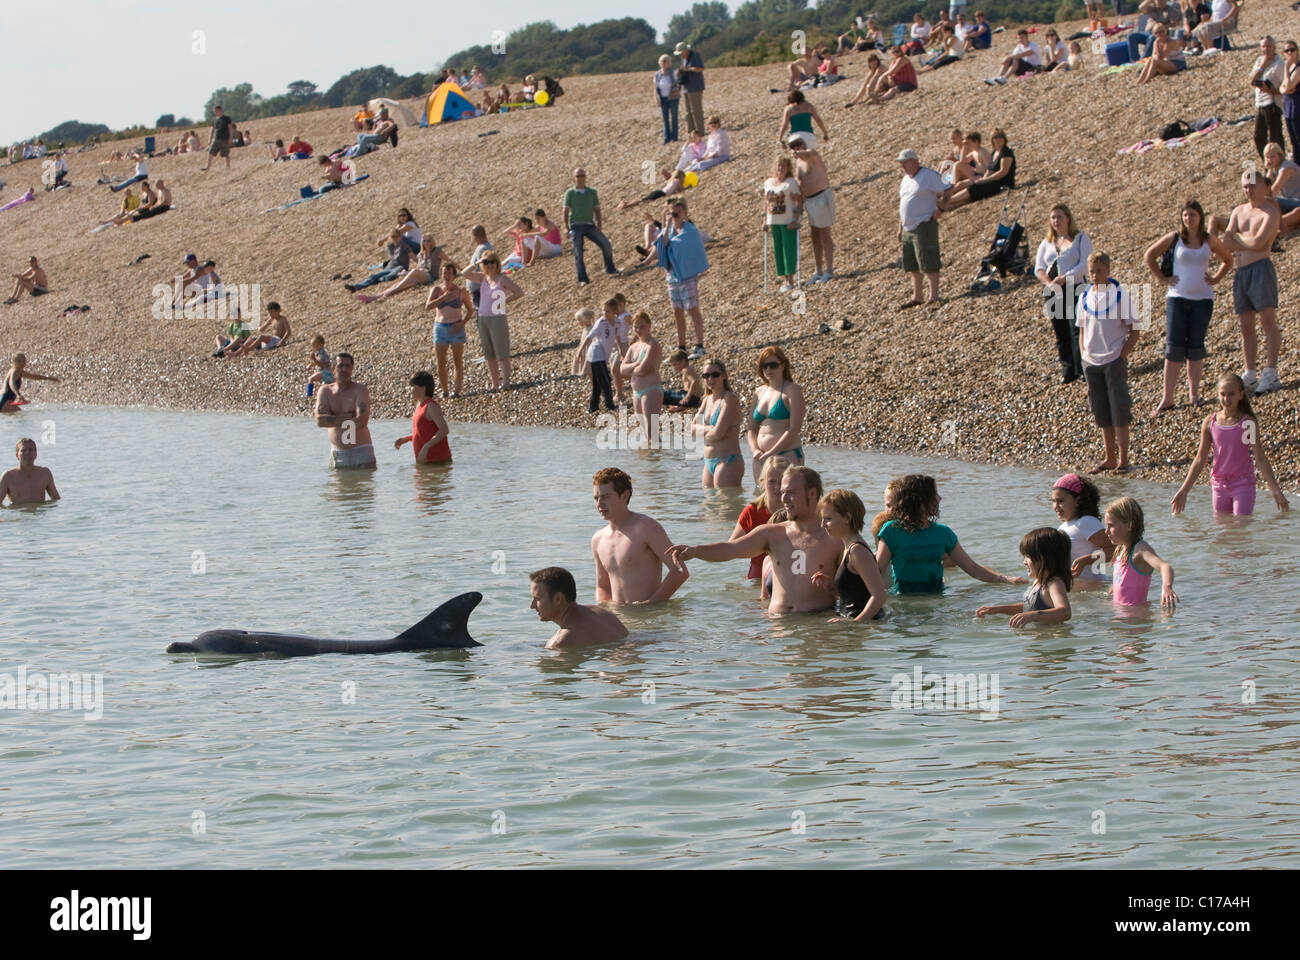 Dauphin commun solitaire (Tursiops truncatus). Folkestone, Kent, Royaume-Uni. Les gens se bousculaient autour des dauphins sur la plage de Sandgate, Kent, Royaume-Uni Banque D'Images